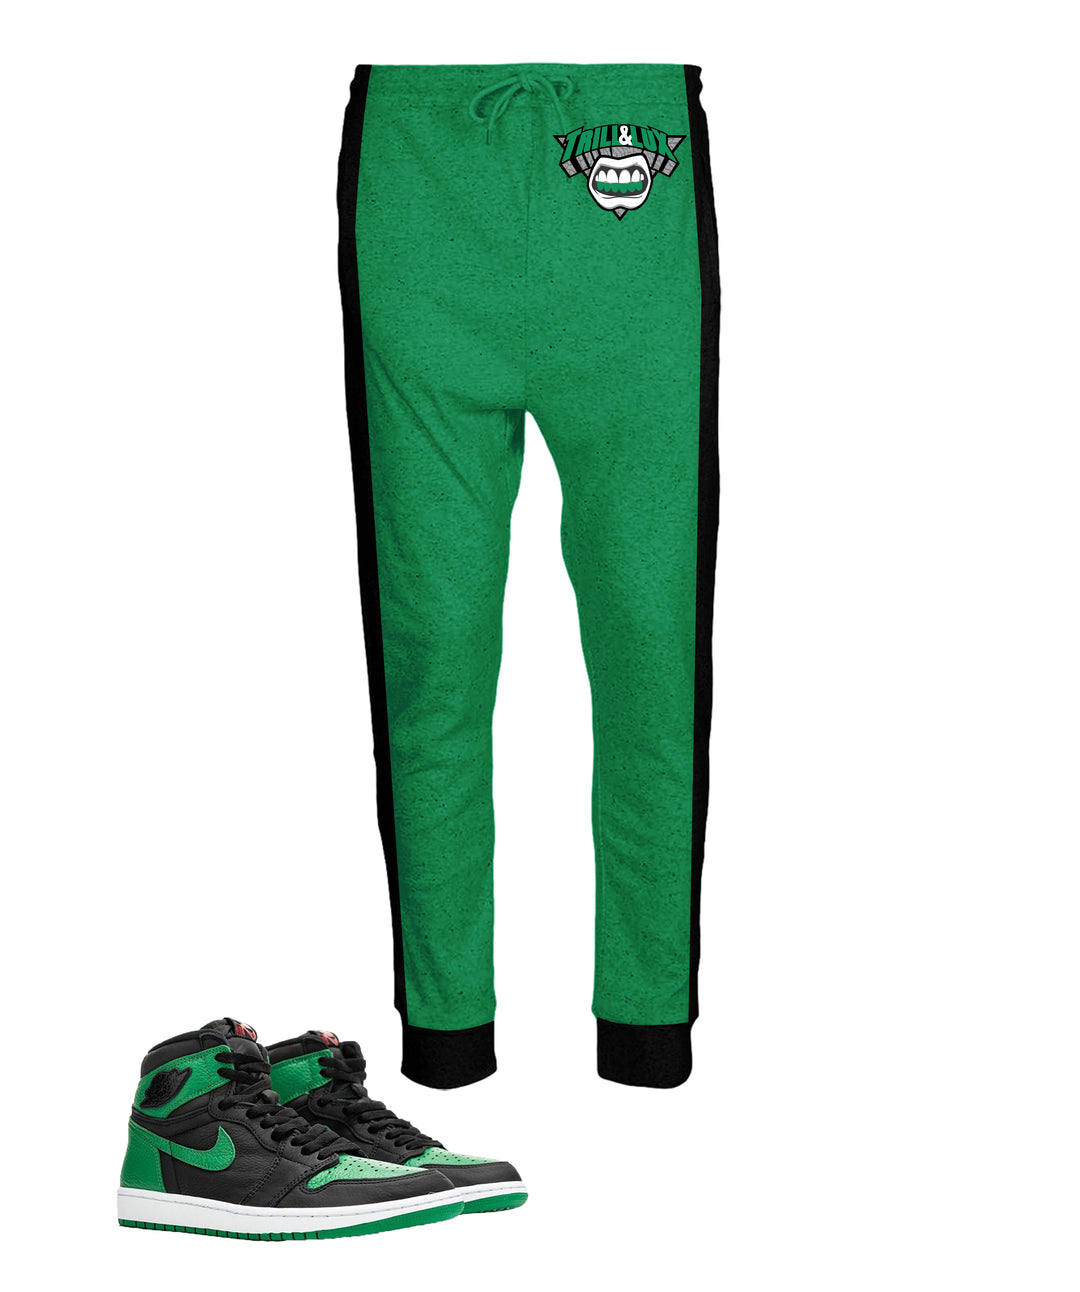 Trill & Lux | Jordan 1 Pine Green Inspired Jogger and Hoodie Suit | Retro Jordan 1